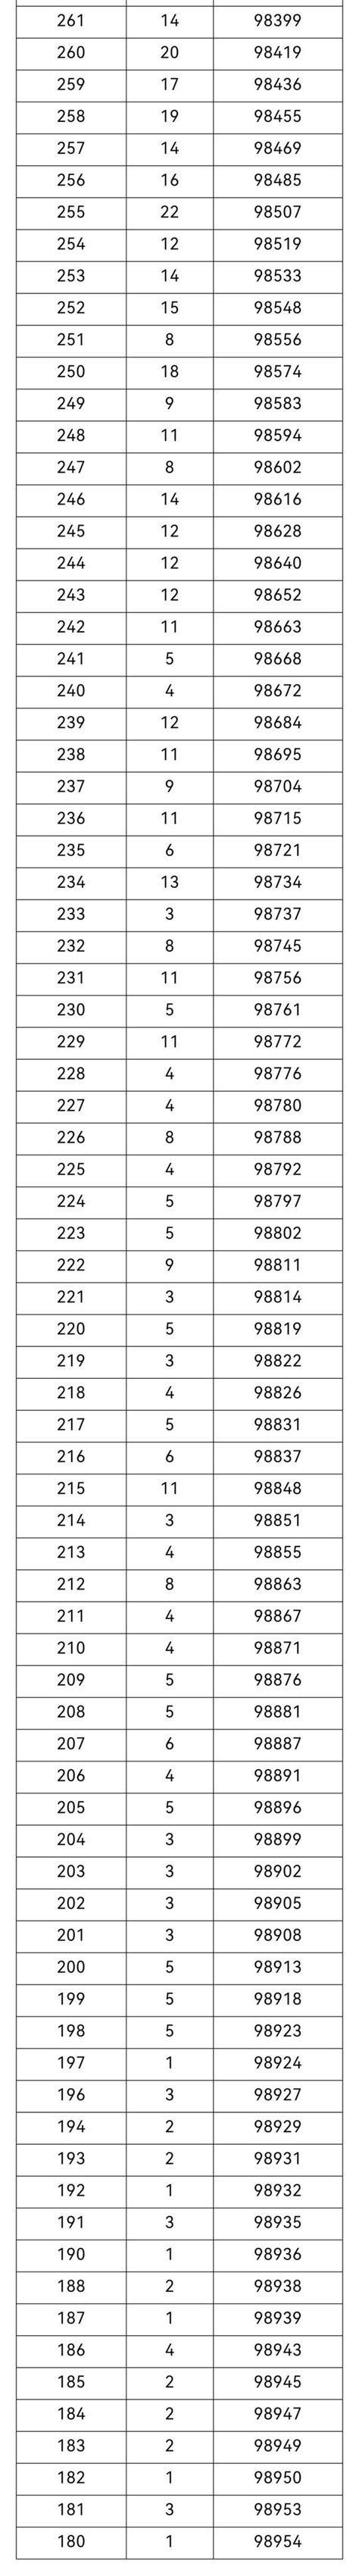 重庆高考一分一段表2021 最新重庆高考分数排名位序查询-闽南网